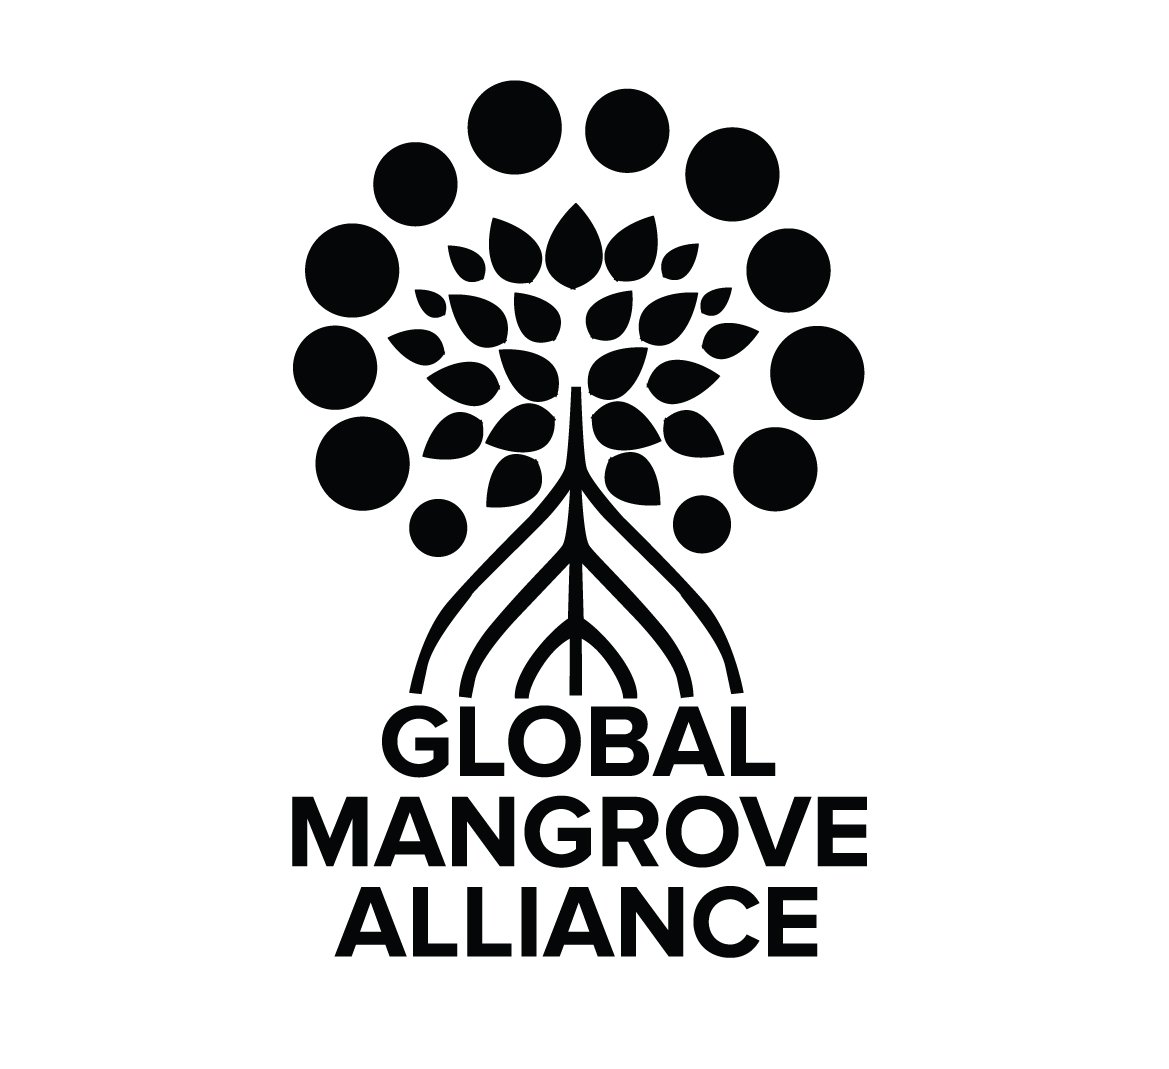 Global Mangrove Alliance